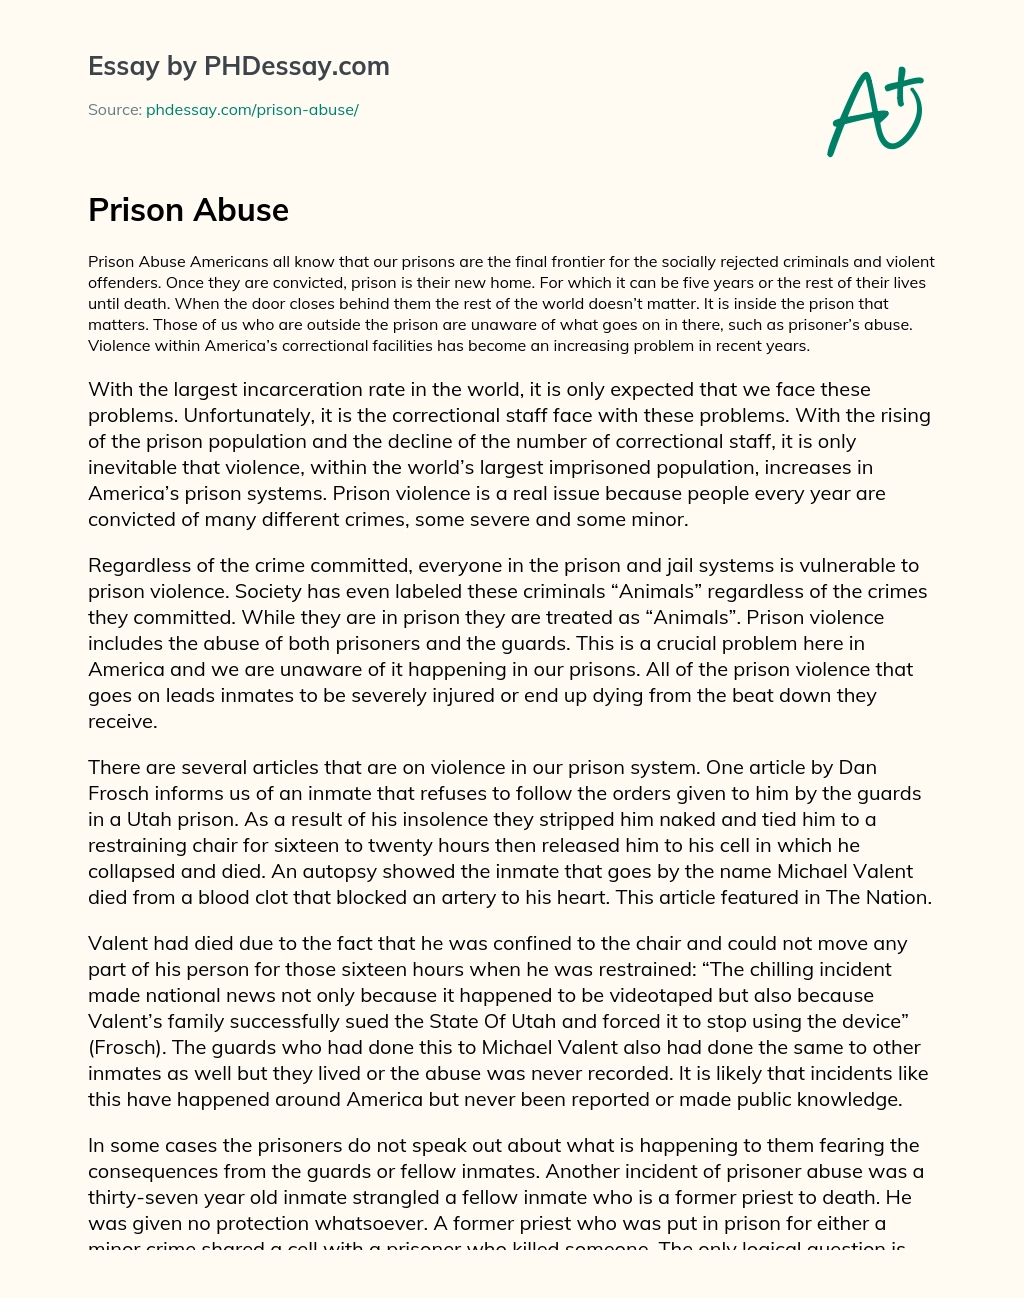 argumentative essay on prisons